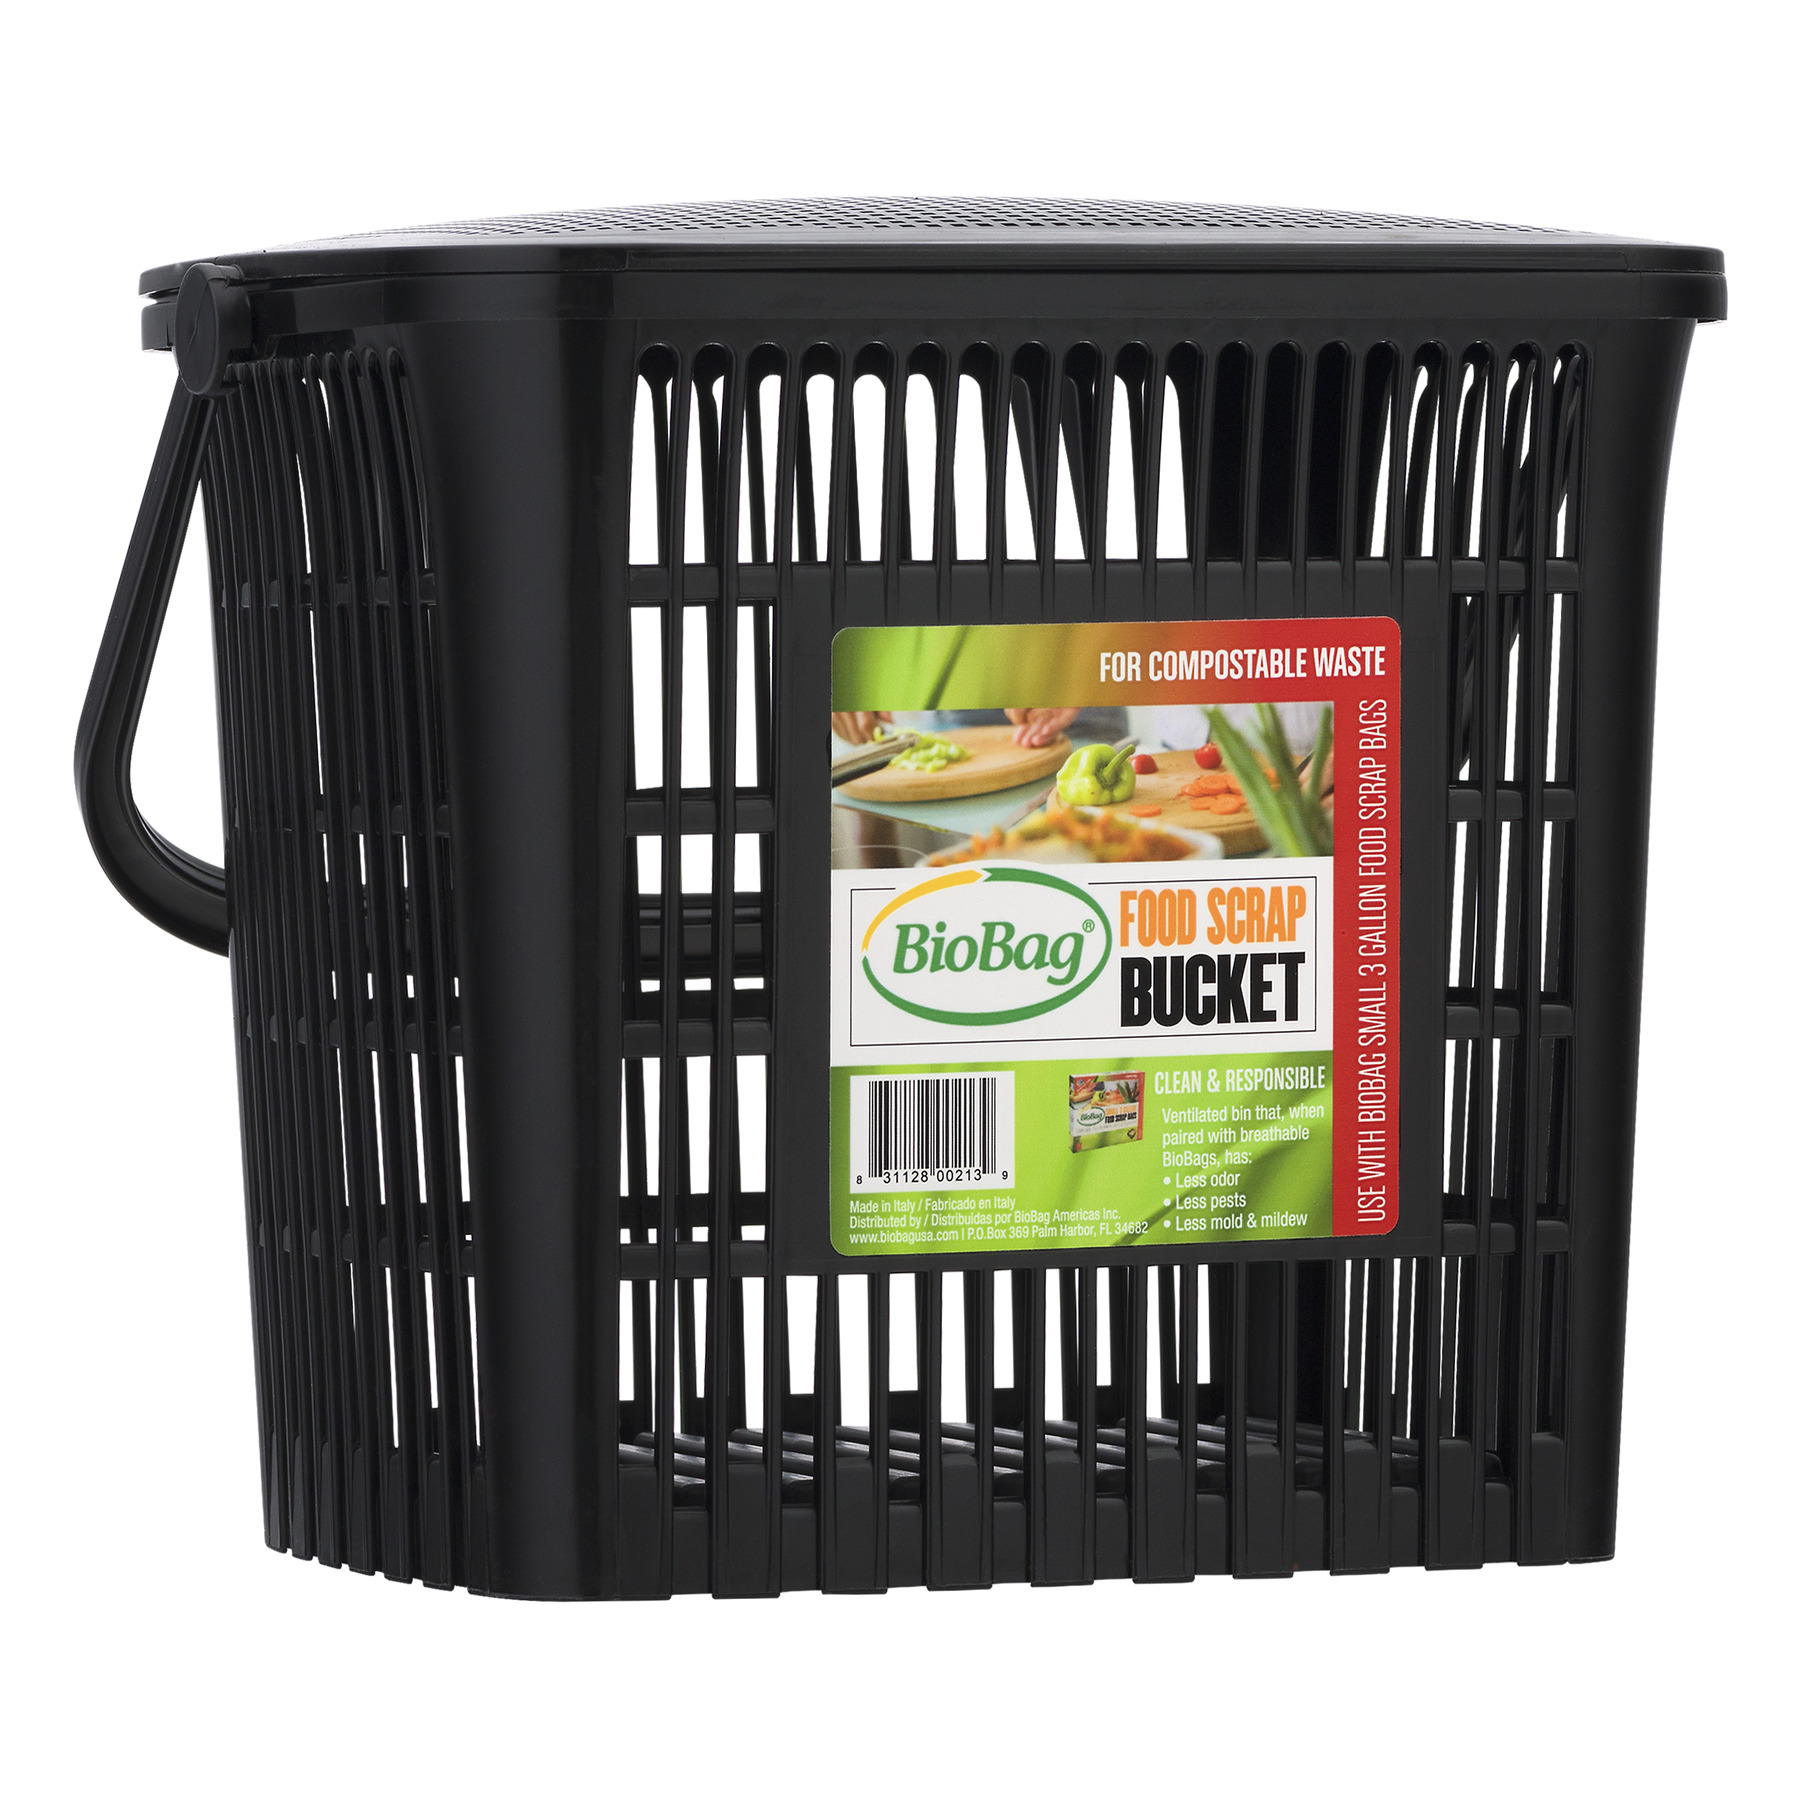 20 x 30L Biobag Compostable Bags for Indoor Bins or Kerbside Food Waste Bins 